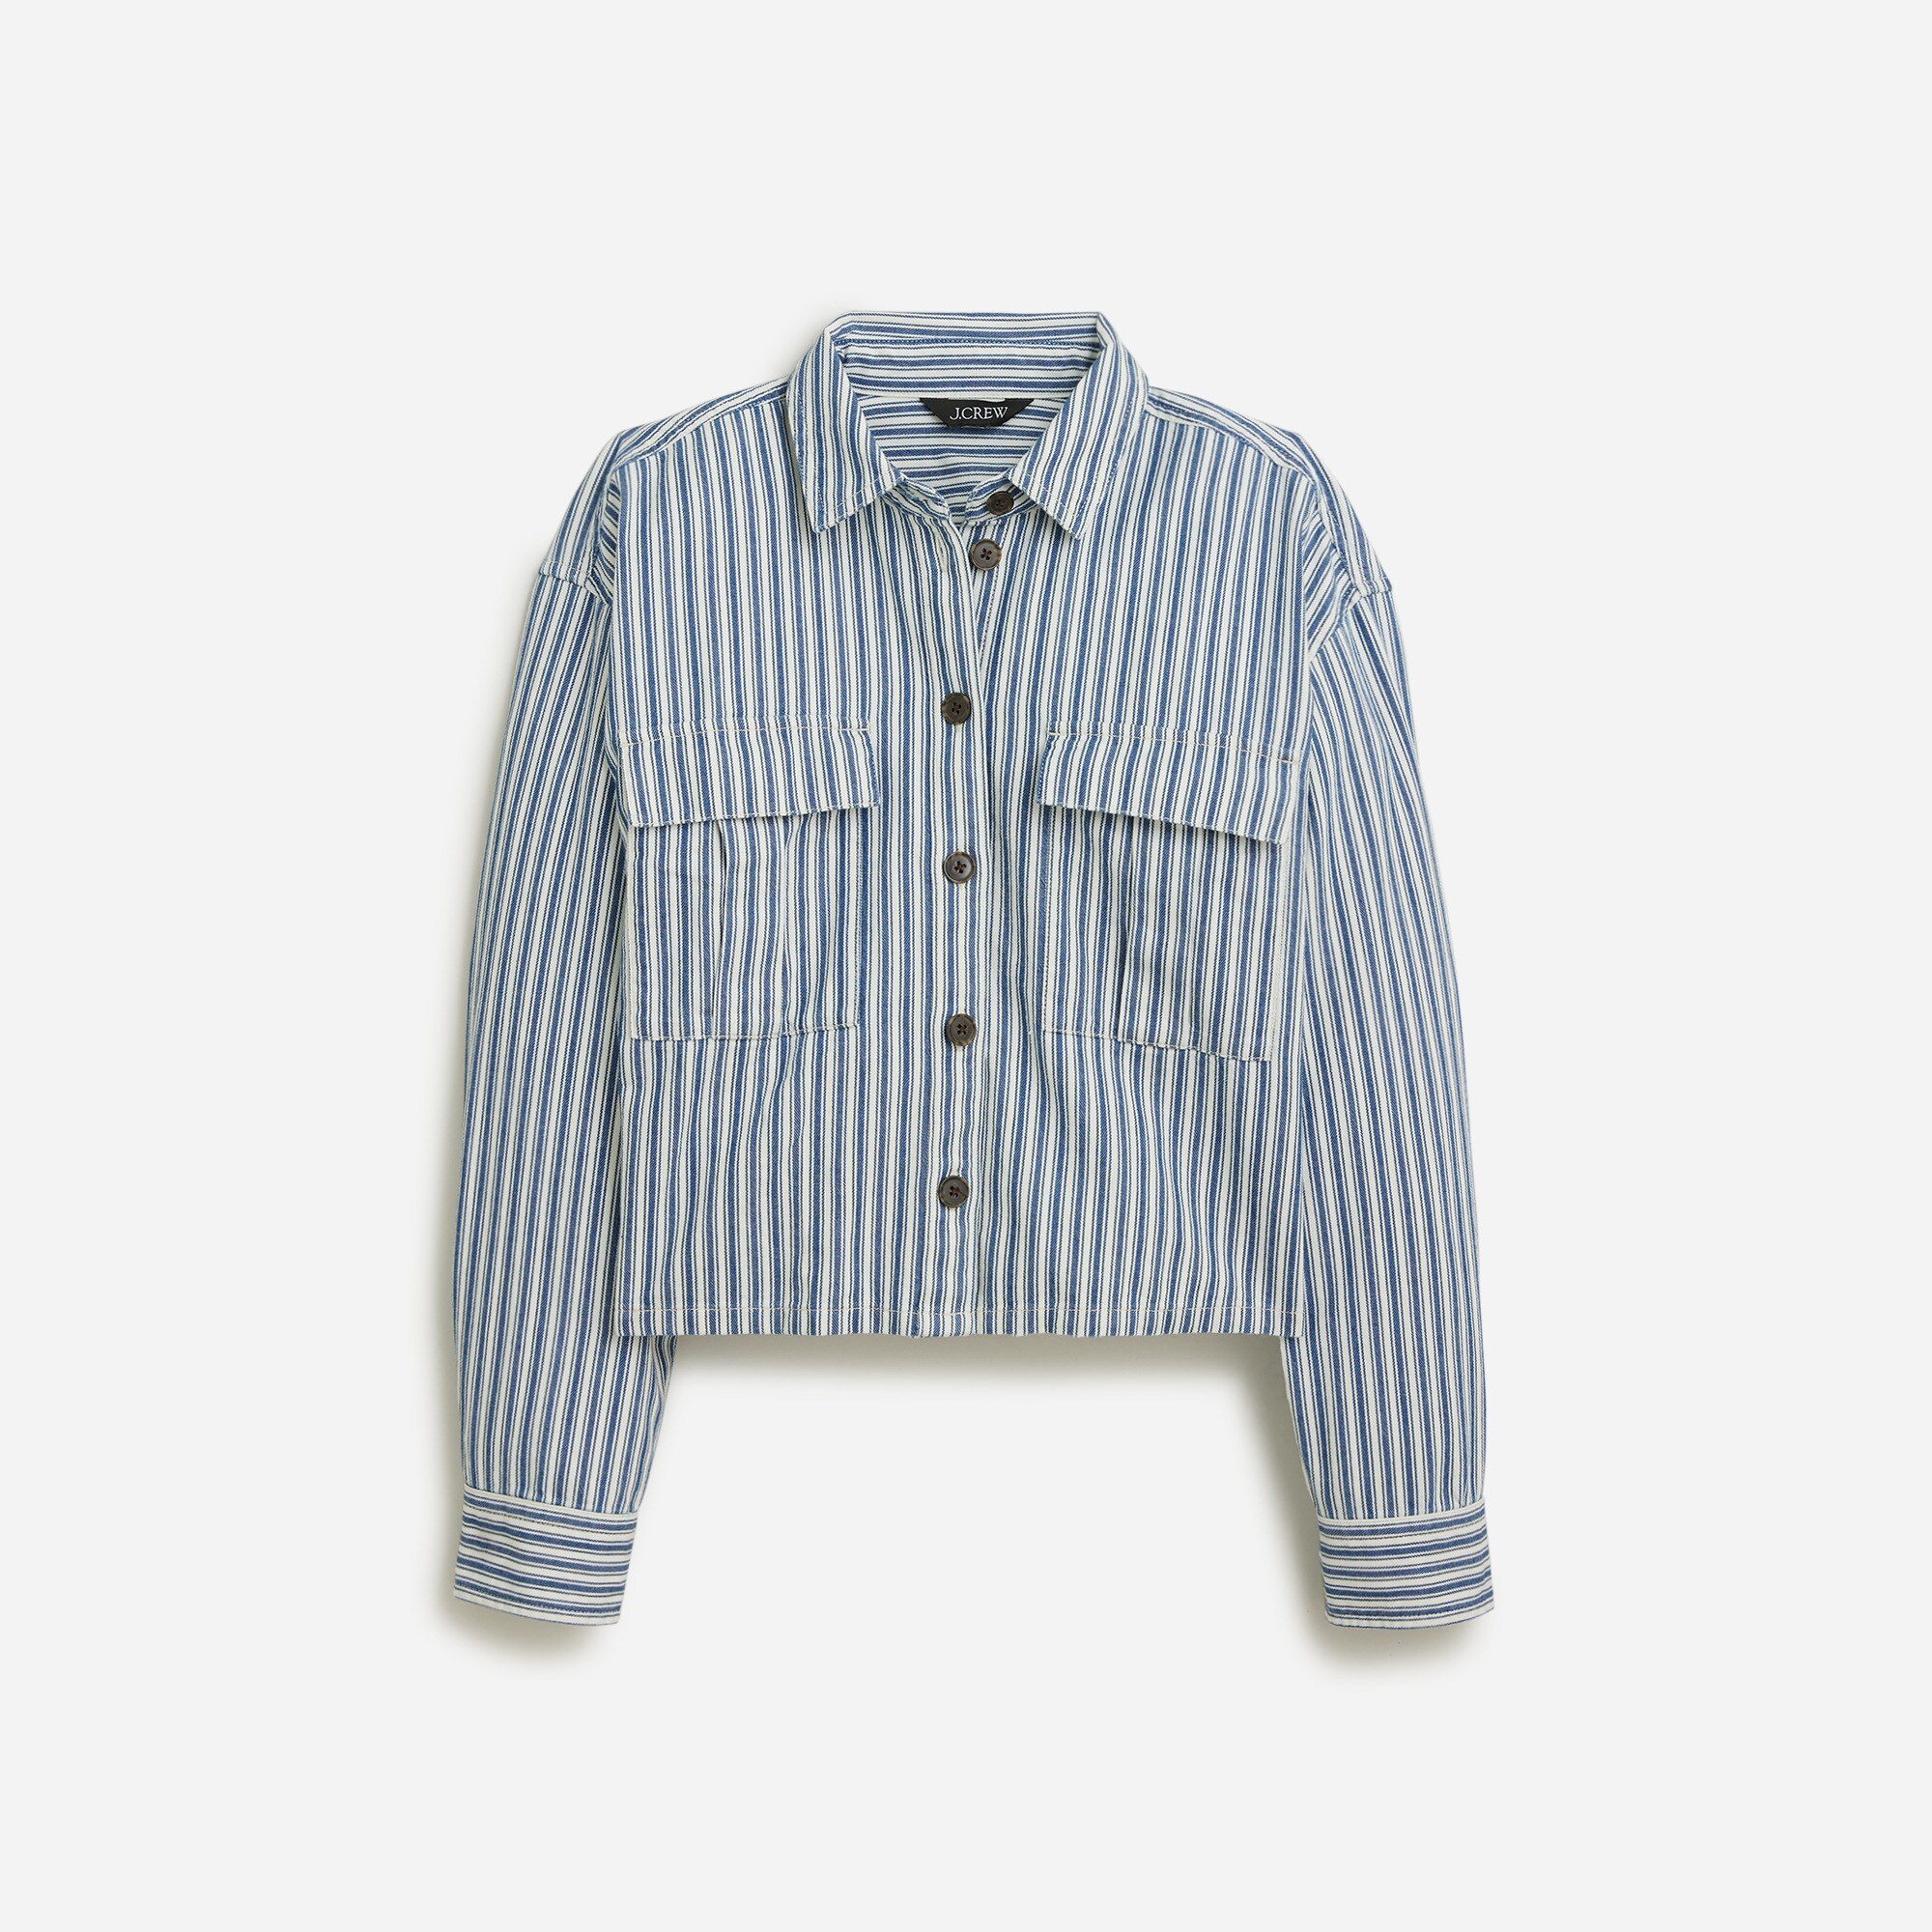  Cargo button-up shirt in stripe